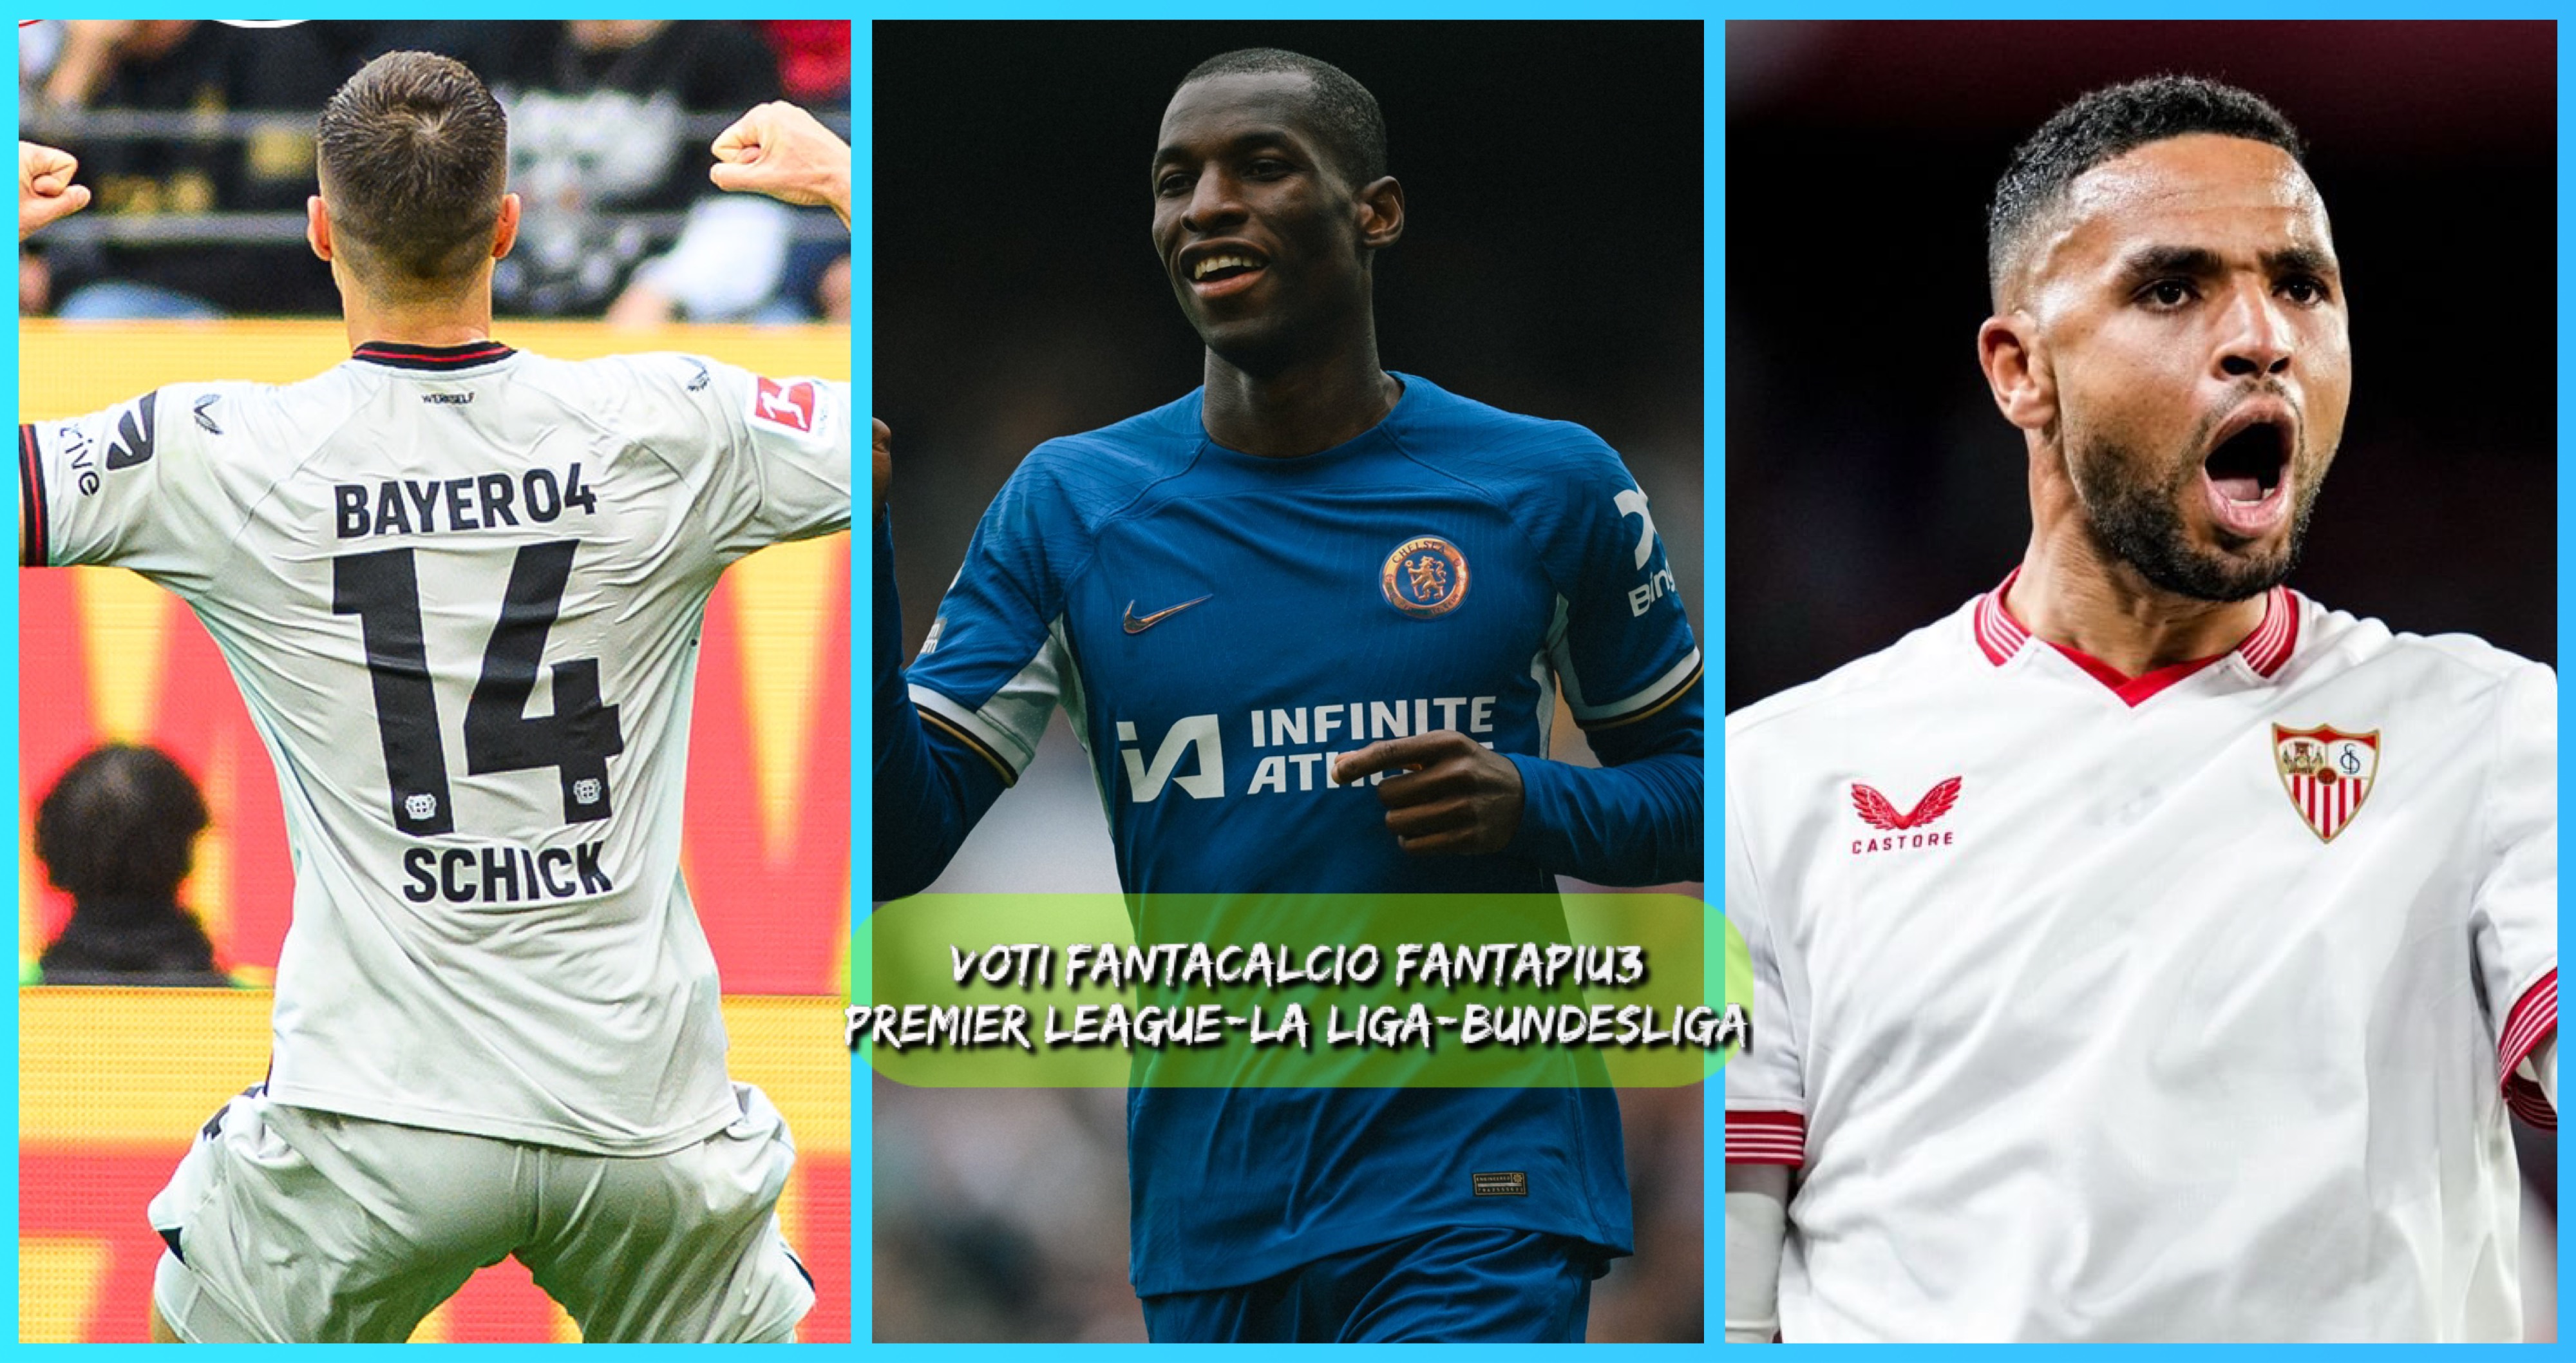 Voti fantacalcio Fantapiu3 per Premier League, La Liga, Bundesliga e Ligue 1